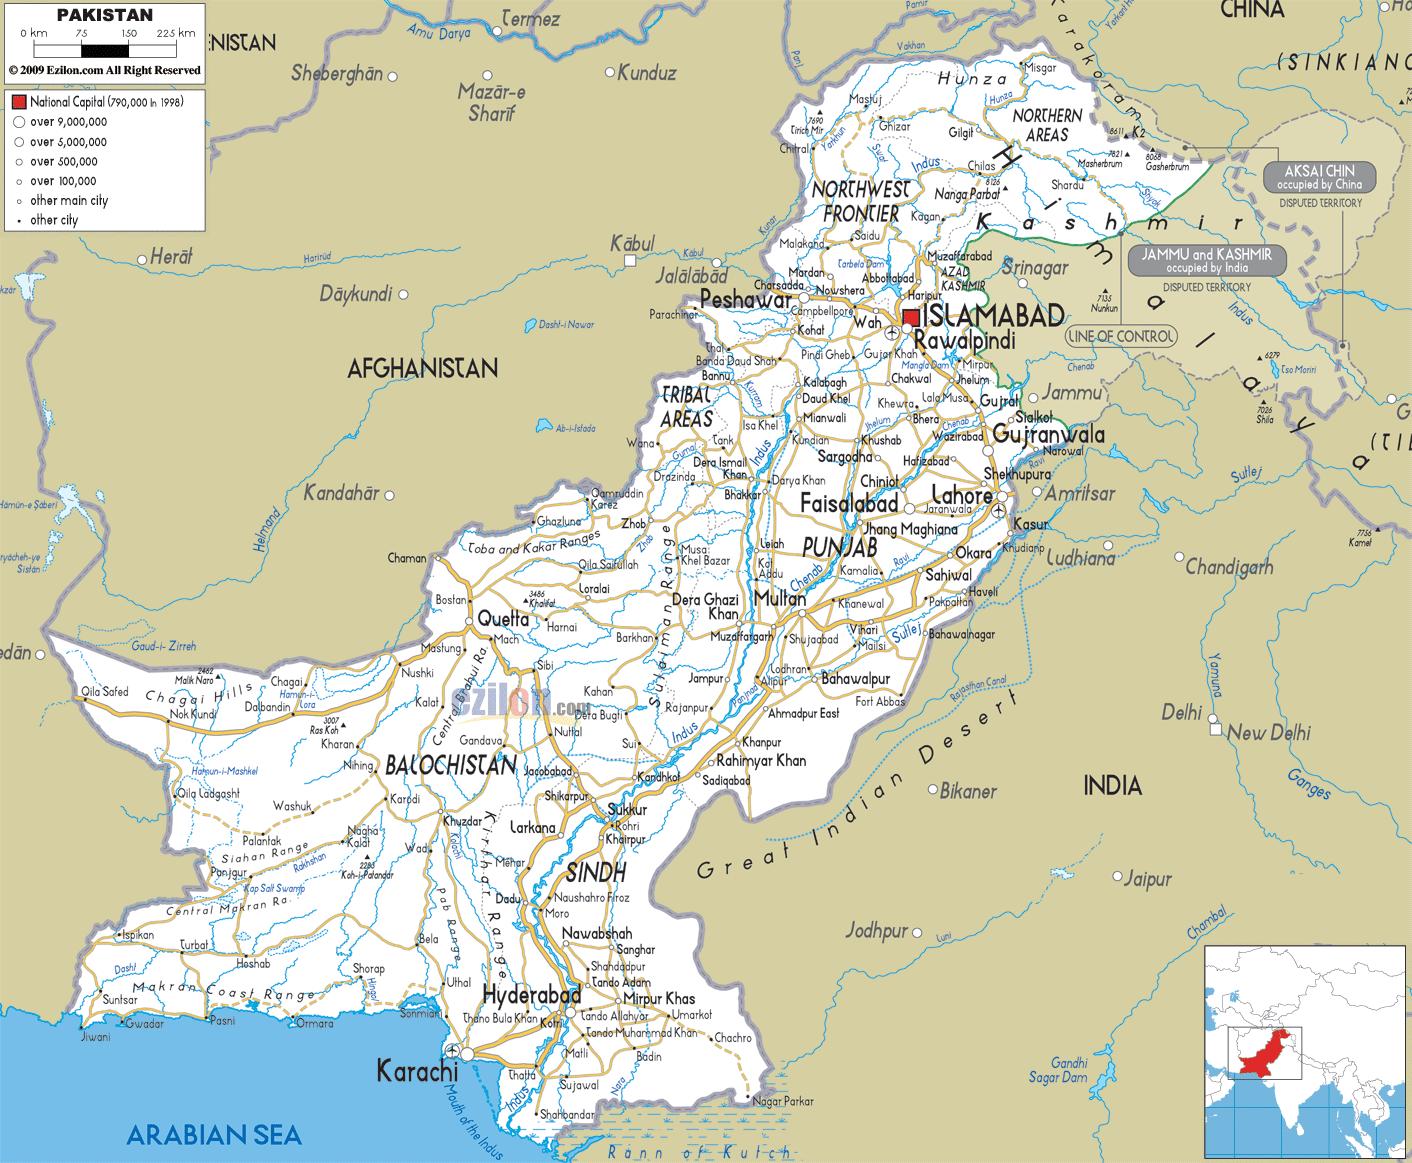 Pakistan - Beauty